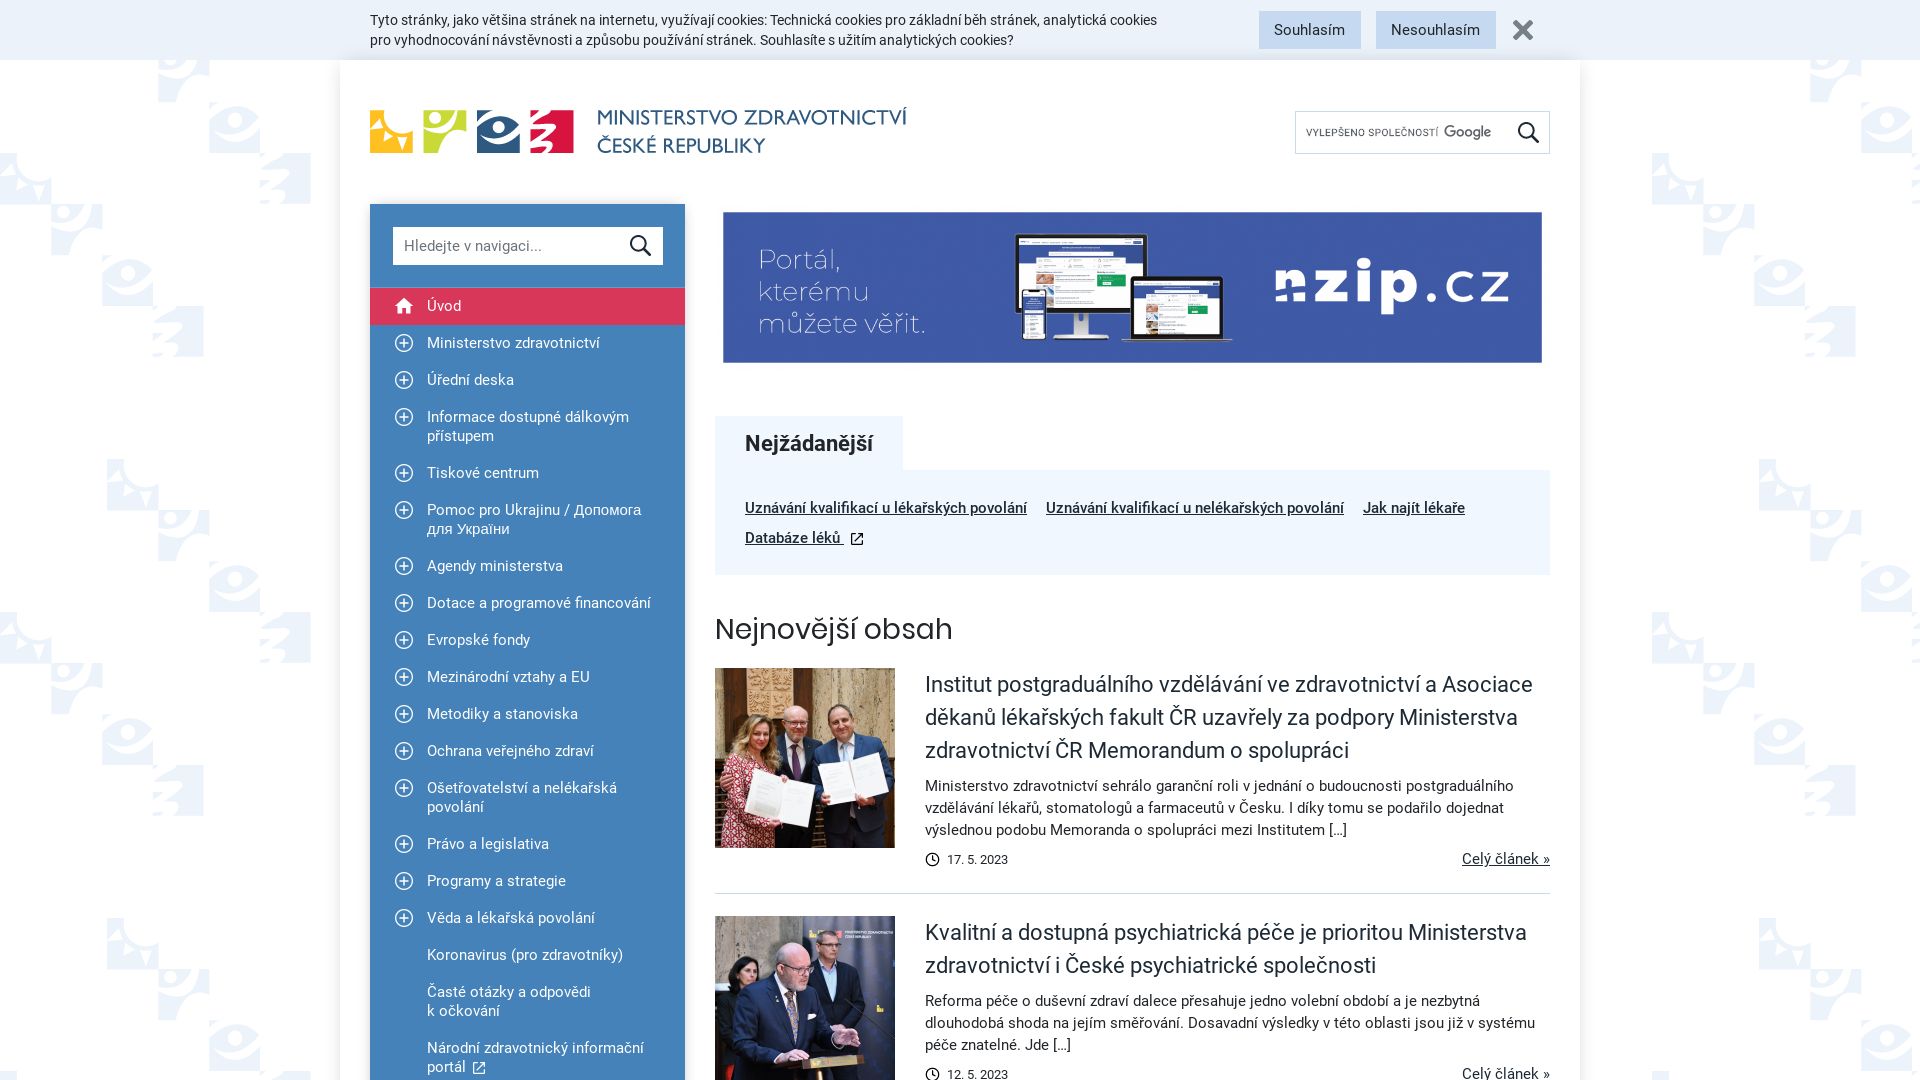 État du site web mzcr.cz est   EN LIGNE